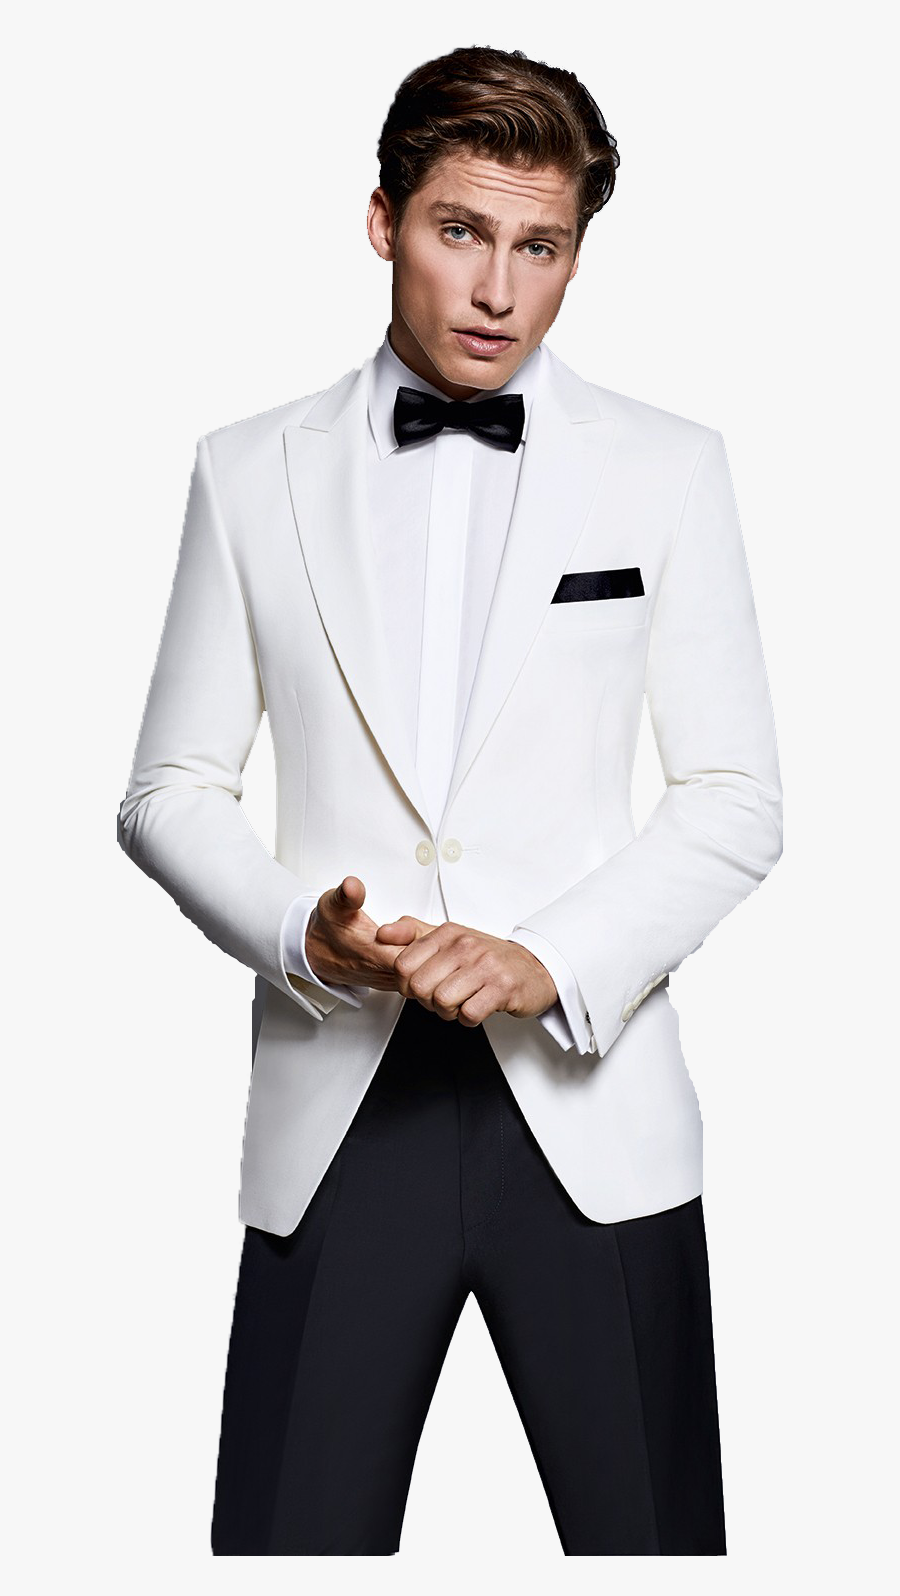 White Tuxedo Suit Png Free Images - Beyaz Damatlık Modelleri, Transparent Clipart